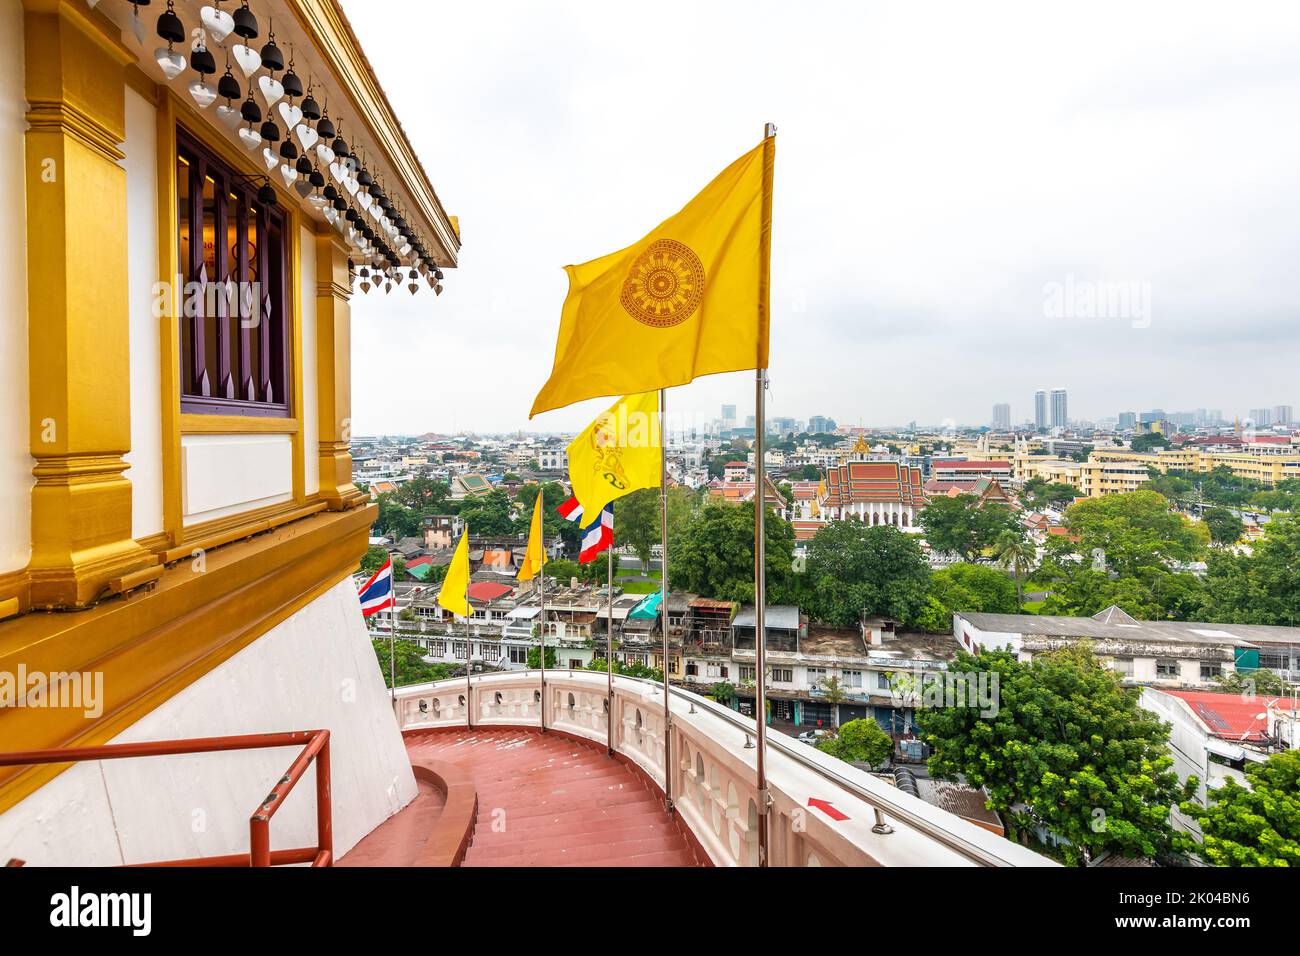 Vue depuis le temple de Wat Saket à Bangkok, Thaïlande. Détail des drapeaux sur le dessus du Golden Mount. Drapeau national de la Thaïlande avec drapeau du bouddhisme. Dans un paysage urbain lointain o Banque D'Images